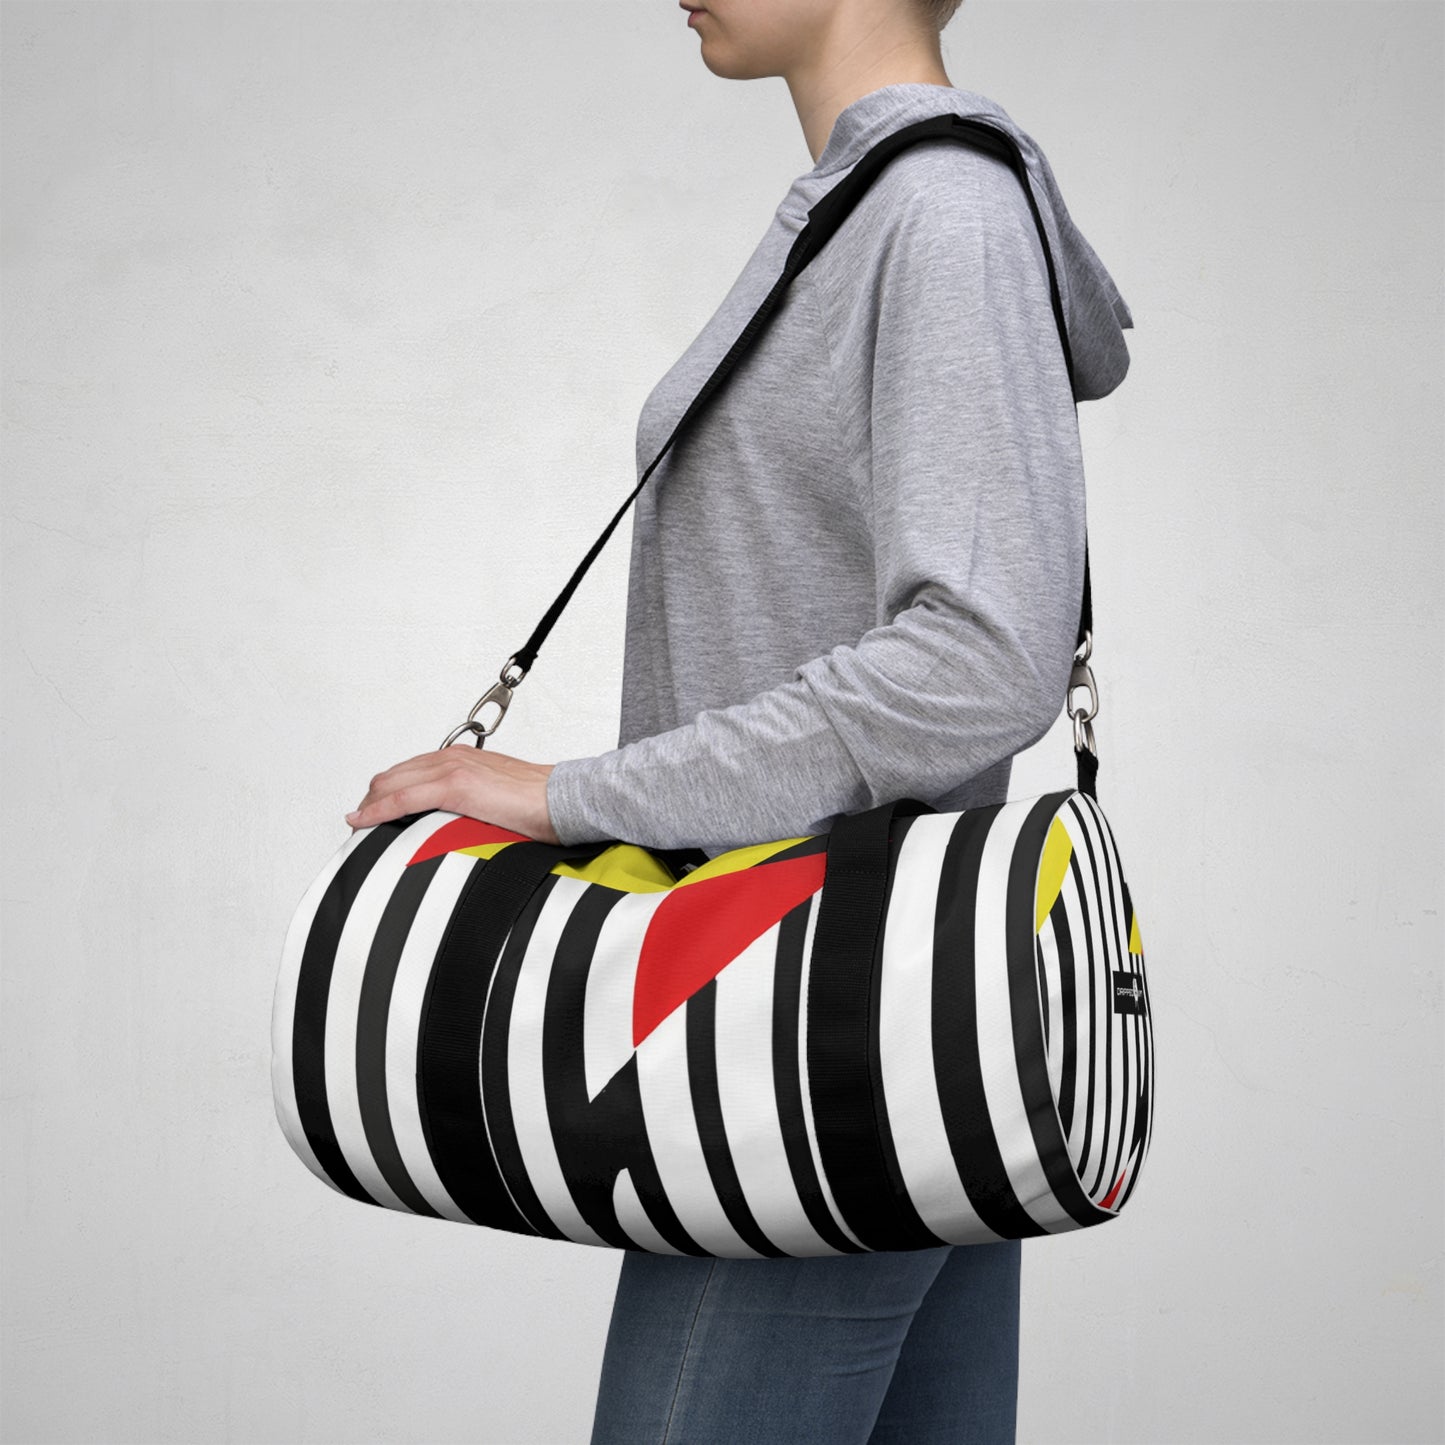 The Parisian Painter -Duffle Bag